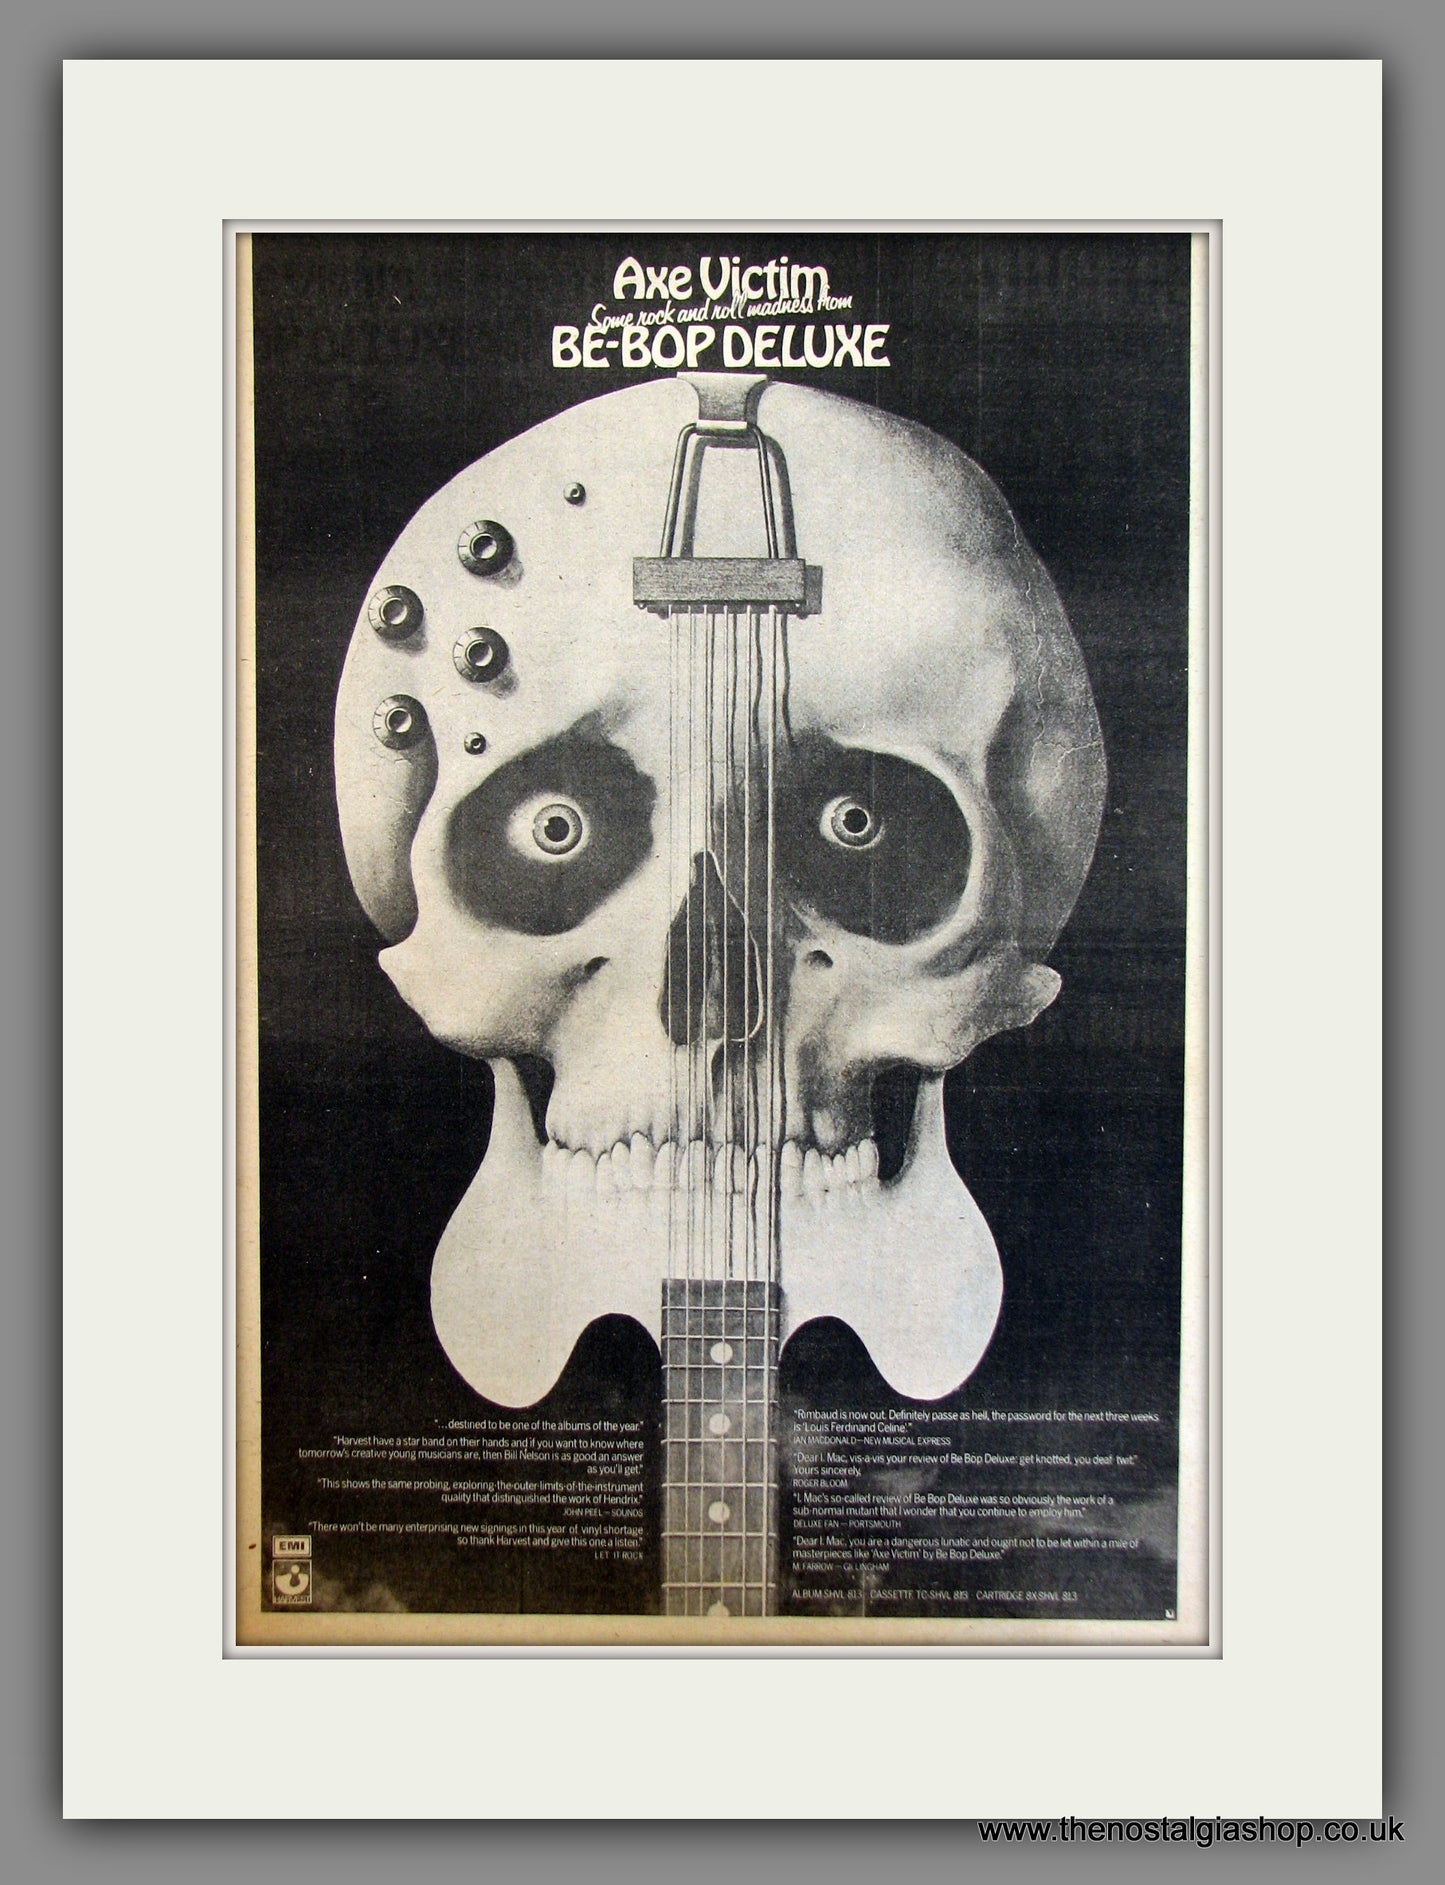 Be-Bop Deluxe, Axe Victim. Original Advert 1974 (ref AD11728)